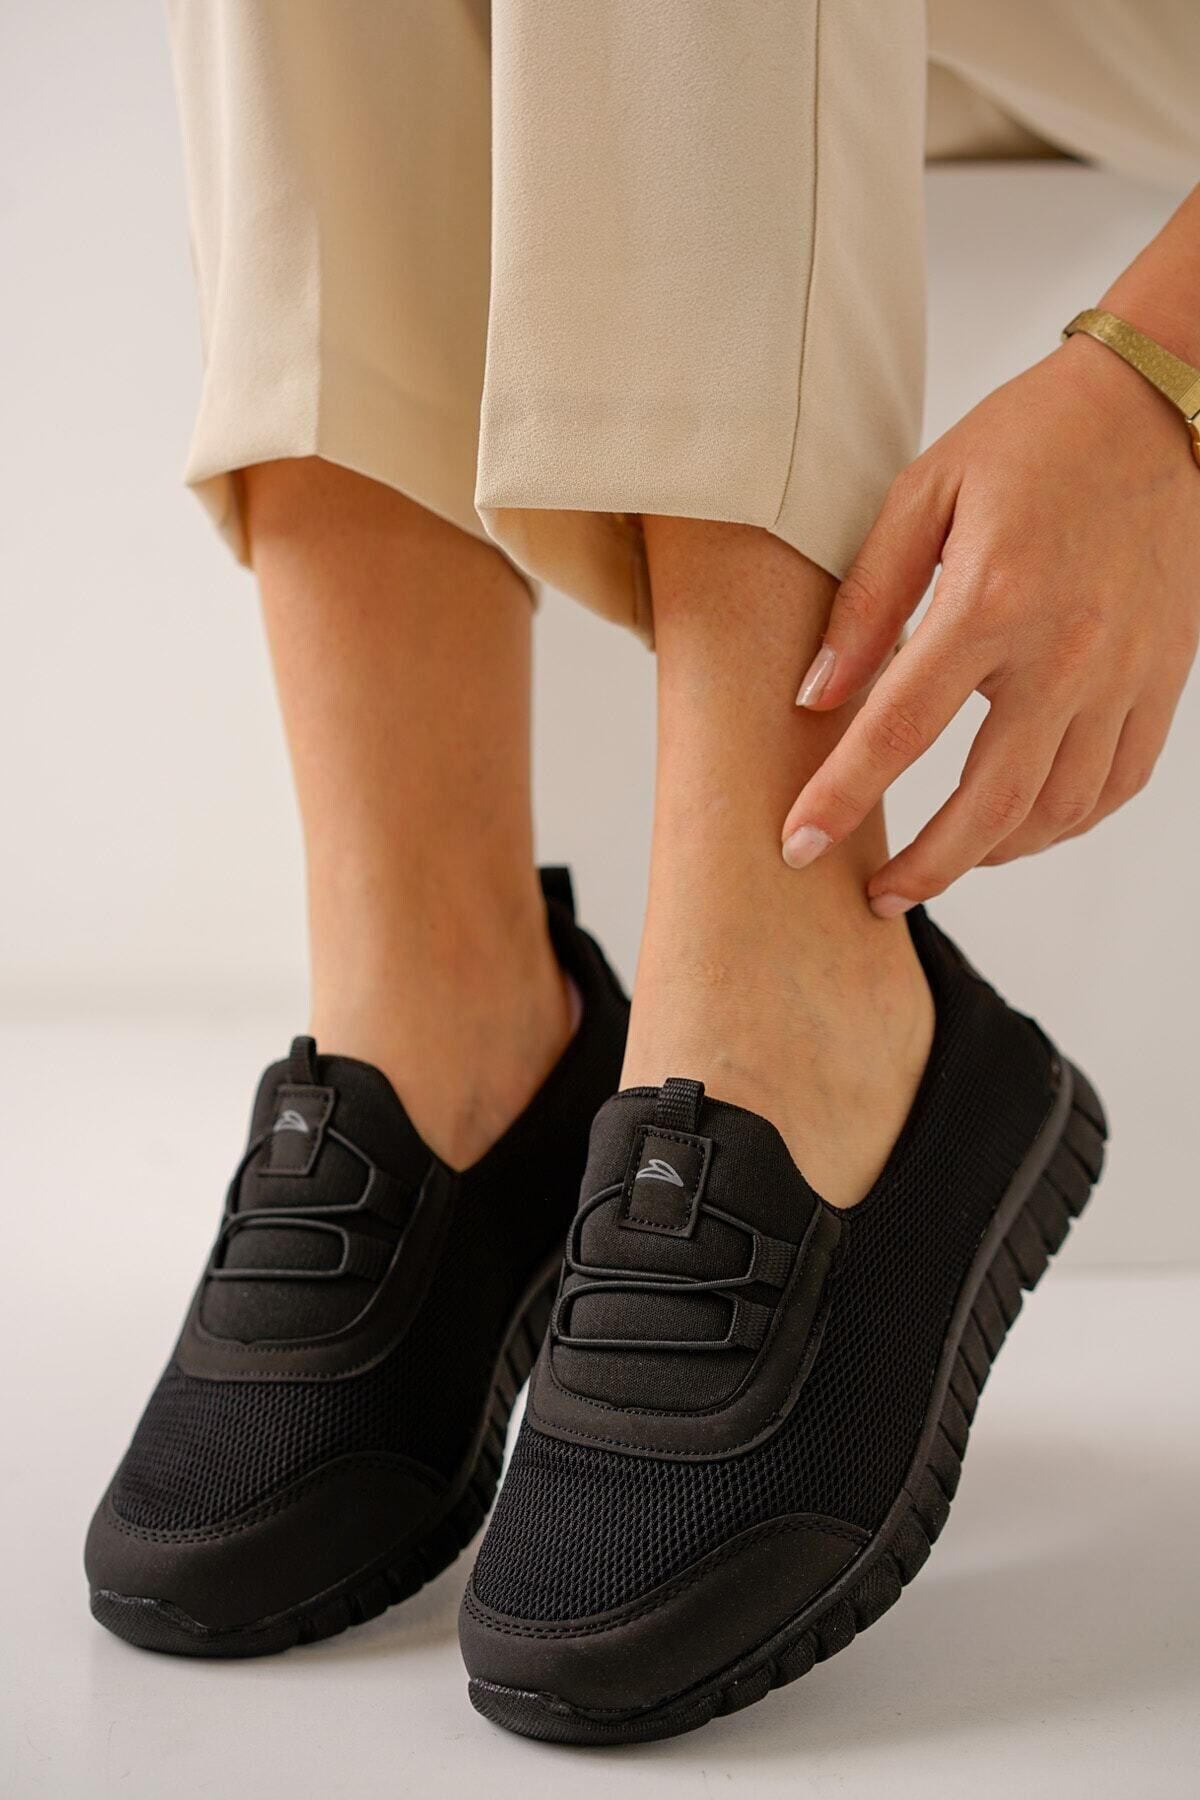 LETAO Amy Kadın Günlük Rahat Esnek Hafif Spor Sneaker Ayakkabı